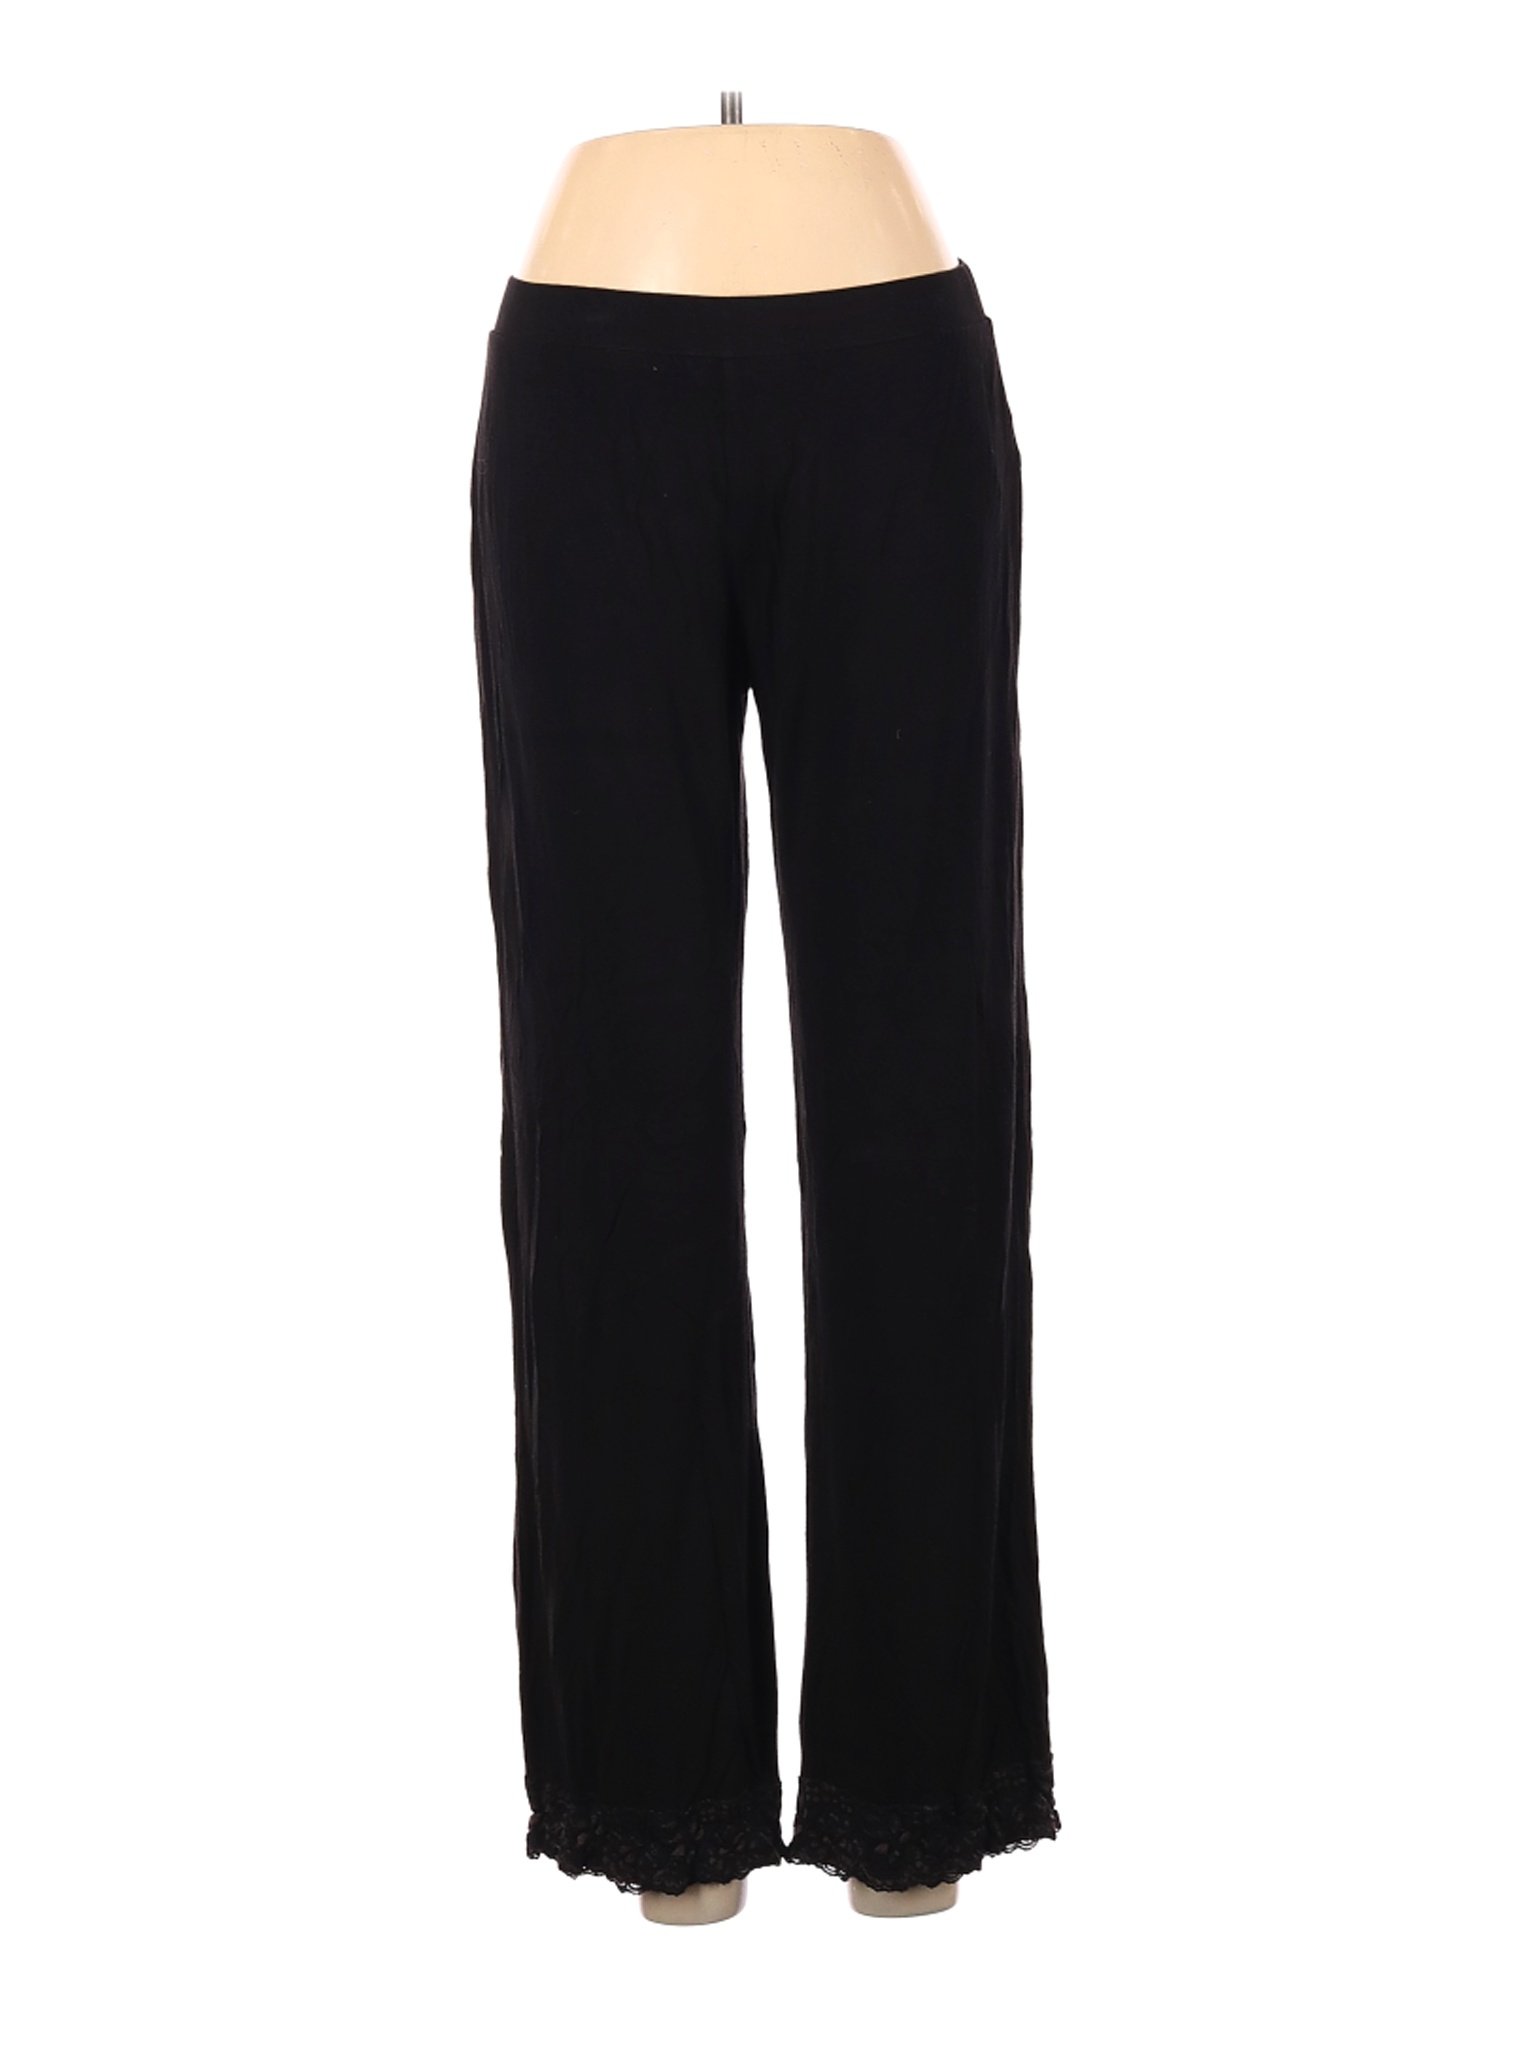 Tahari Women Black Casual Pants M | eBay